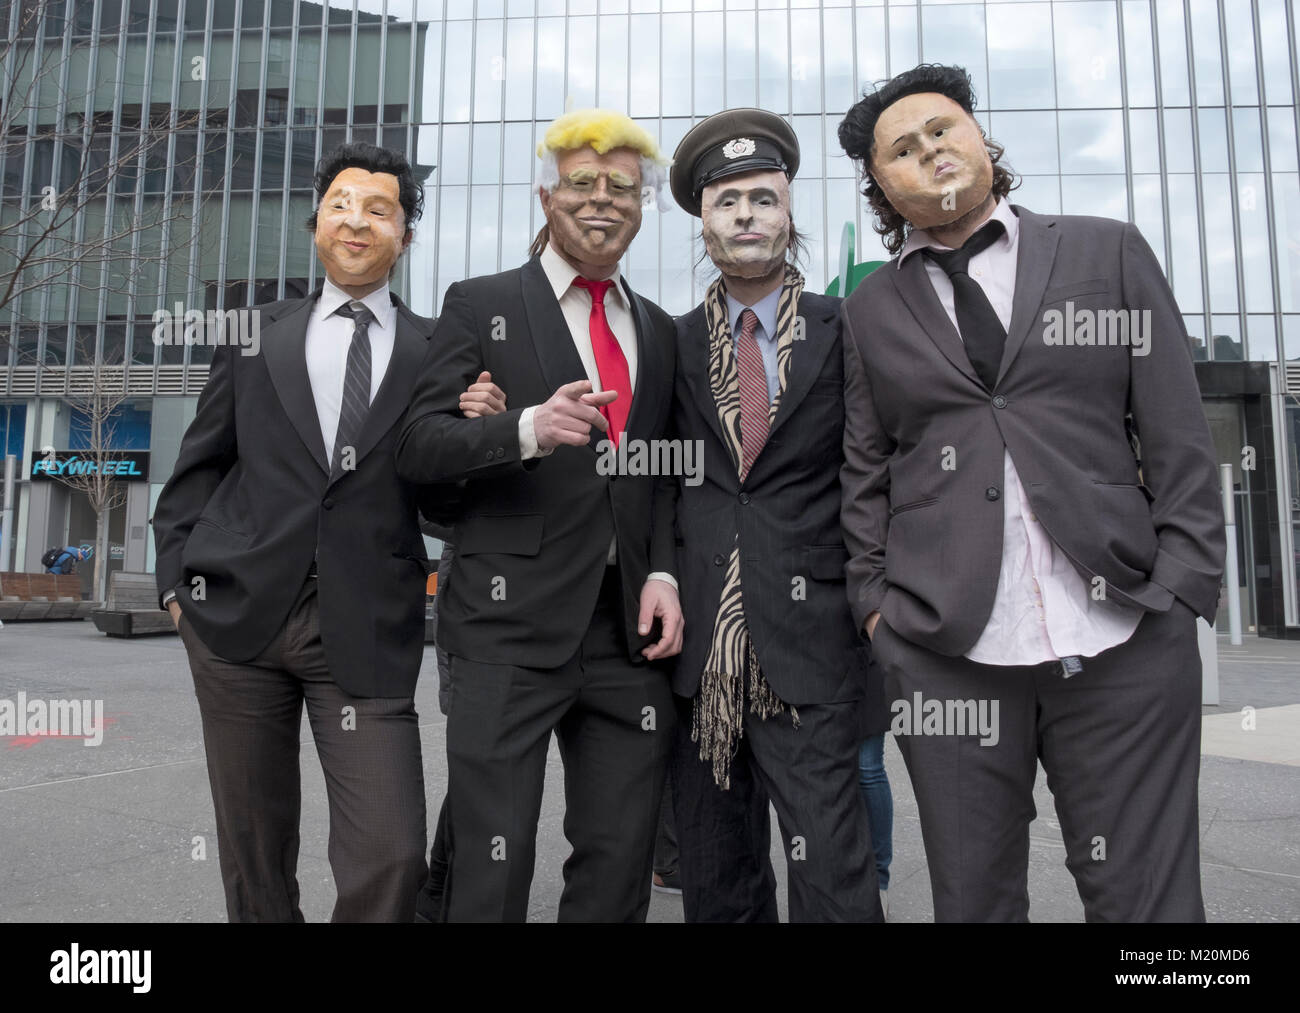 Mitglieder der Band Ultra in Masken für ein Musikvideo. Sie sind, wie Donald Trump, Xi Jinpeng, Wladimir Putin & Kim Jong Un gekleidet. Stockfoto